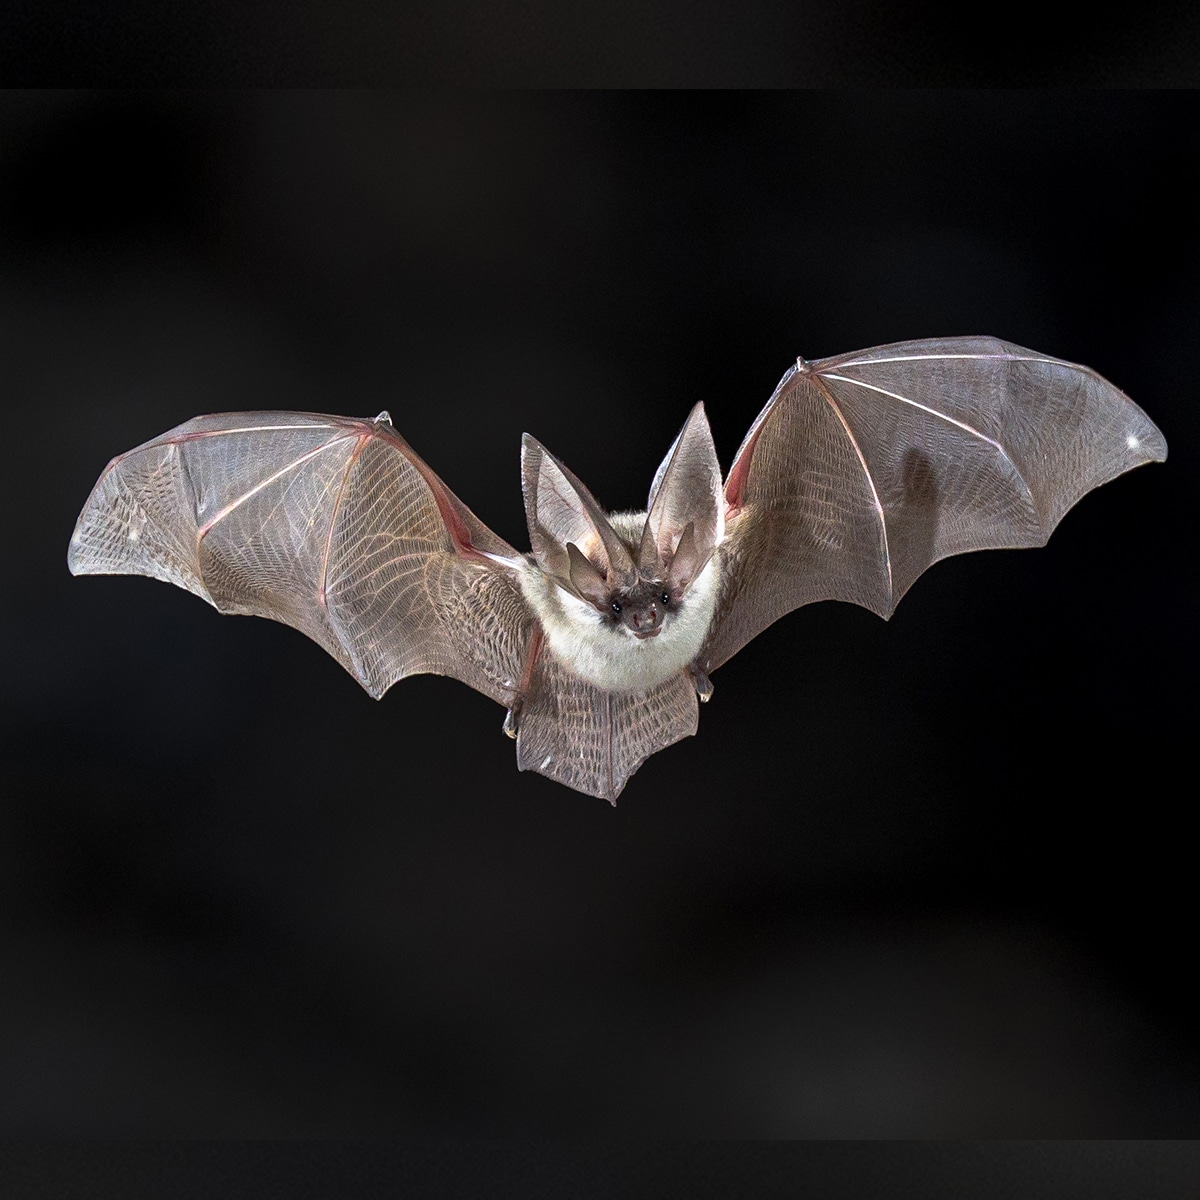 DPNR Asks For Awareness During Bat Appreciation Month Of October